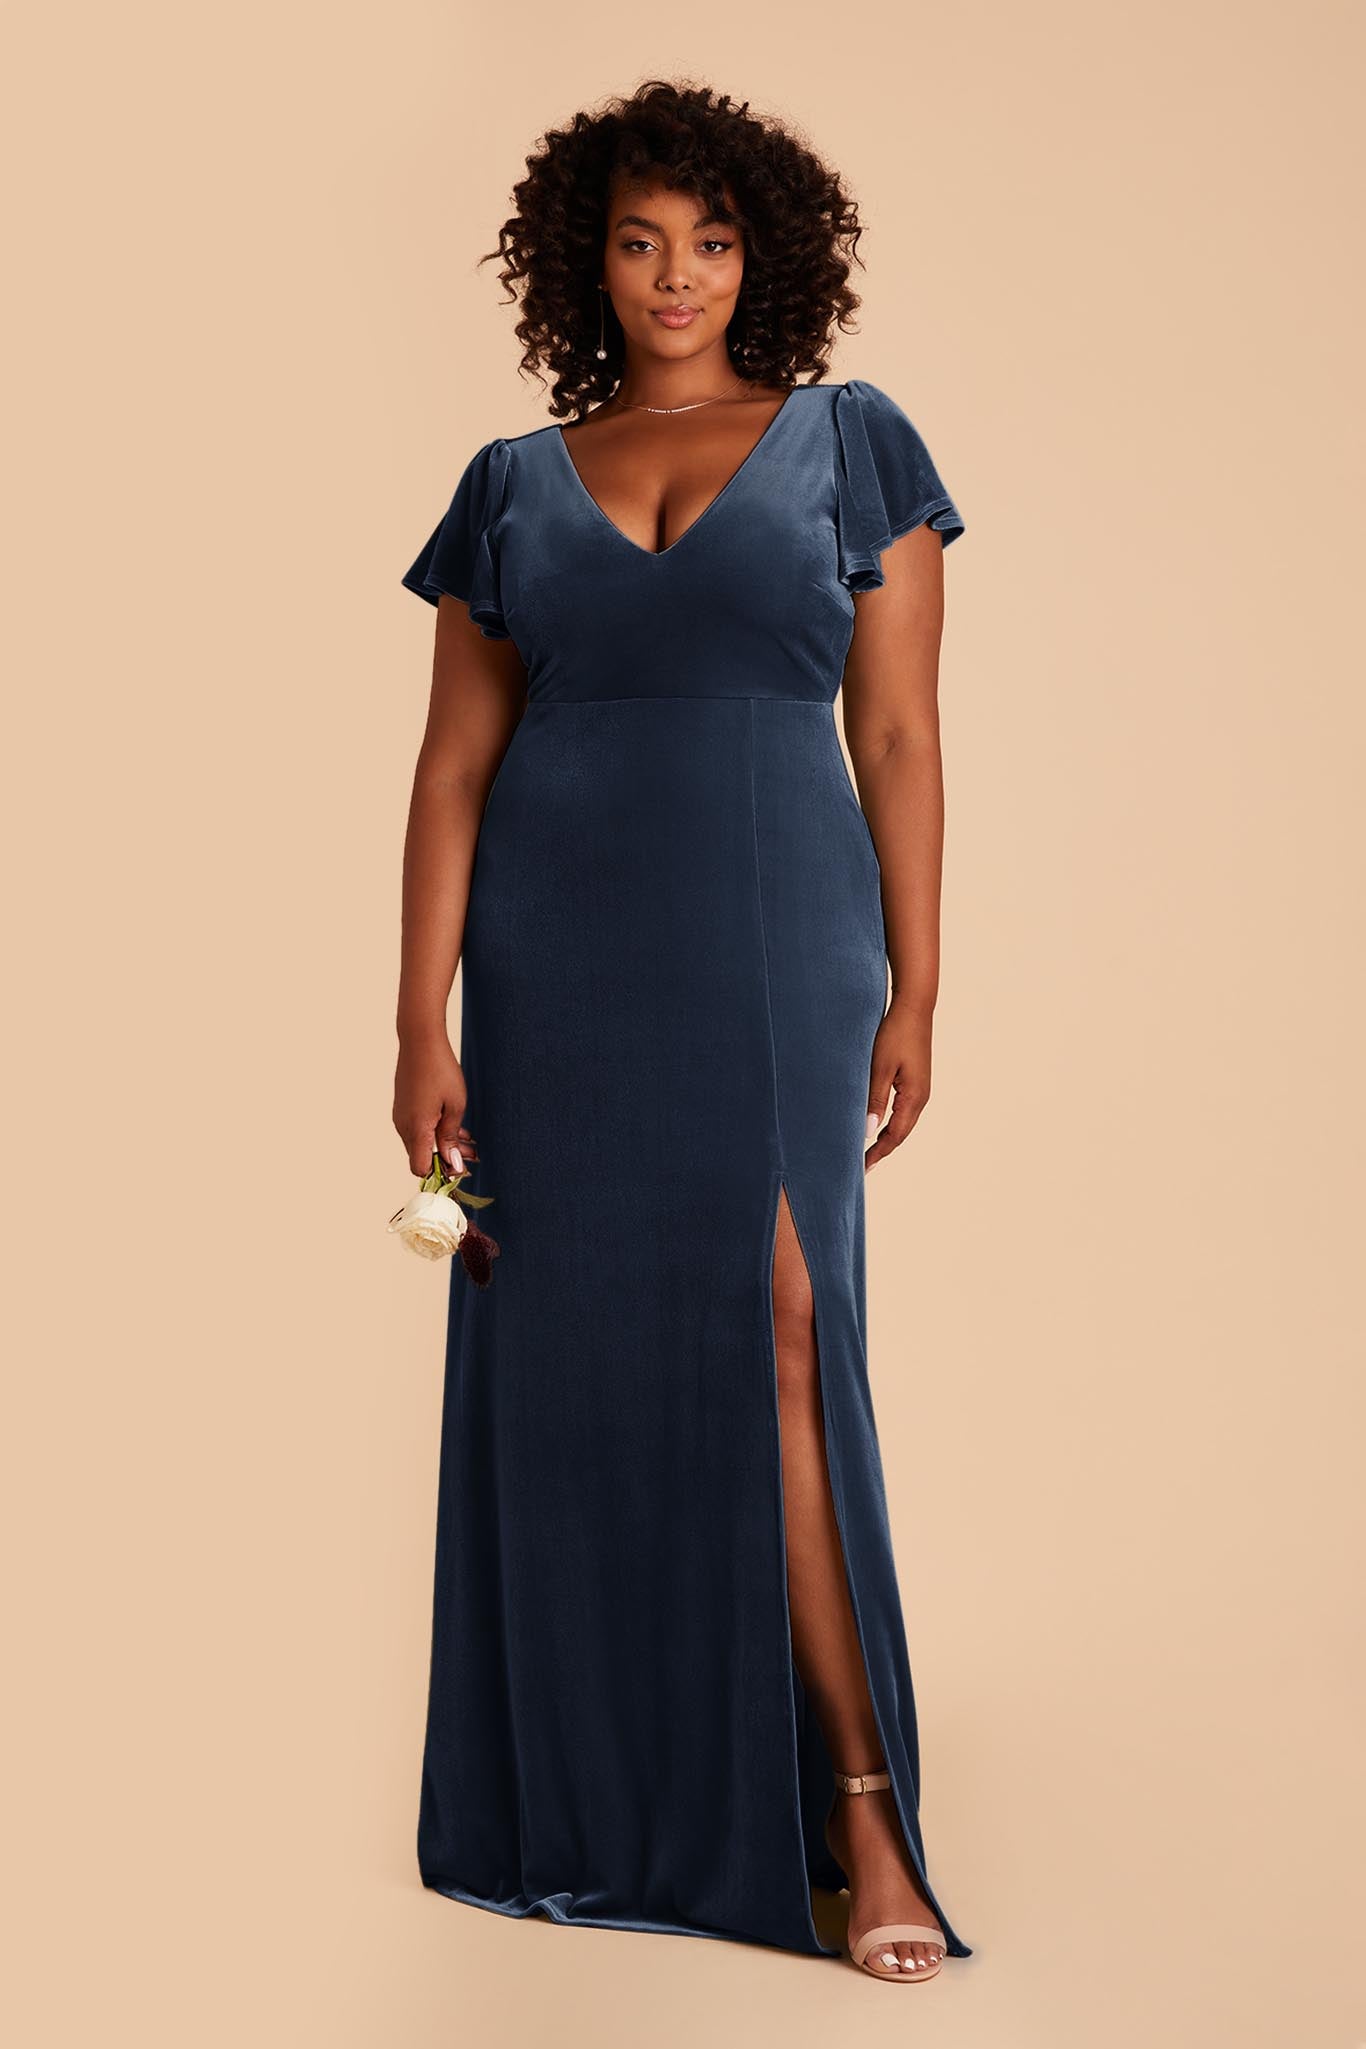 Bini Fabrics Navy Blue Velvet Dress Fabric Plain Velvet Material 44/45